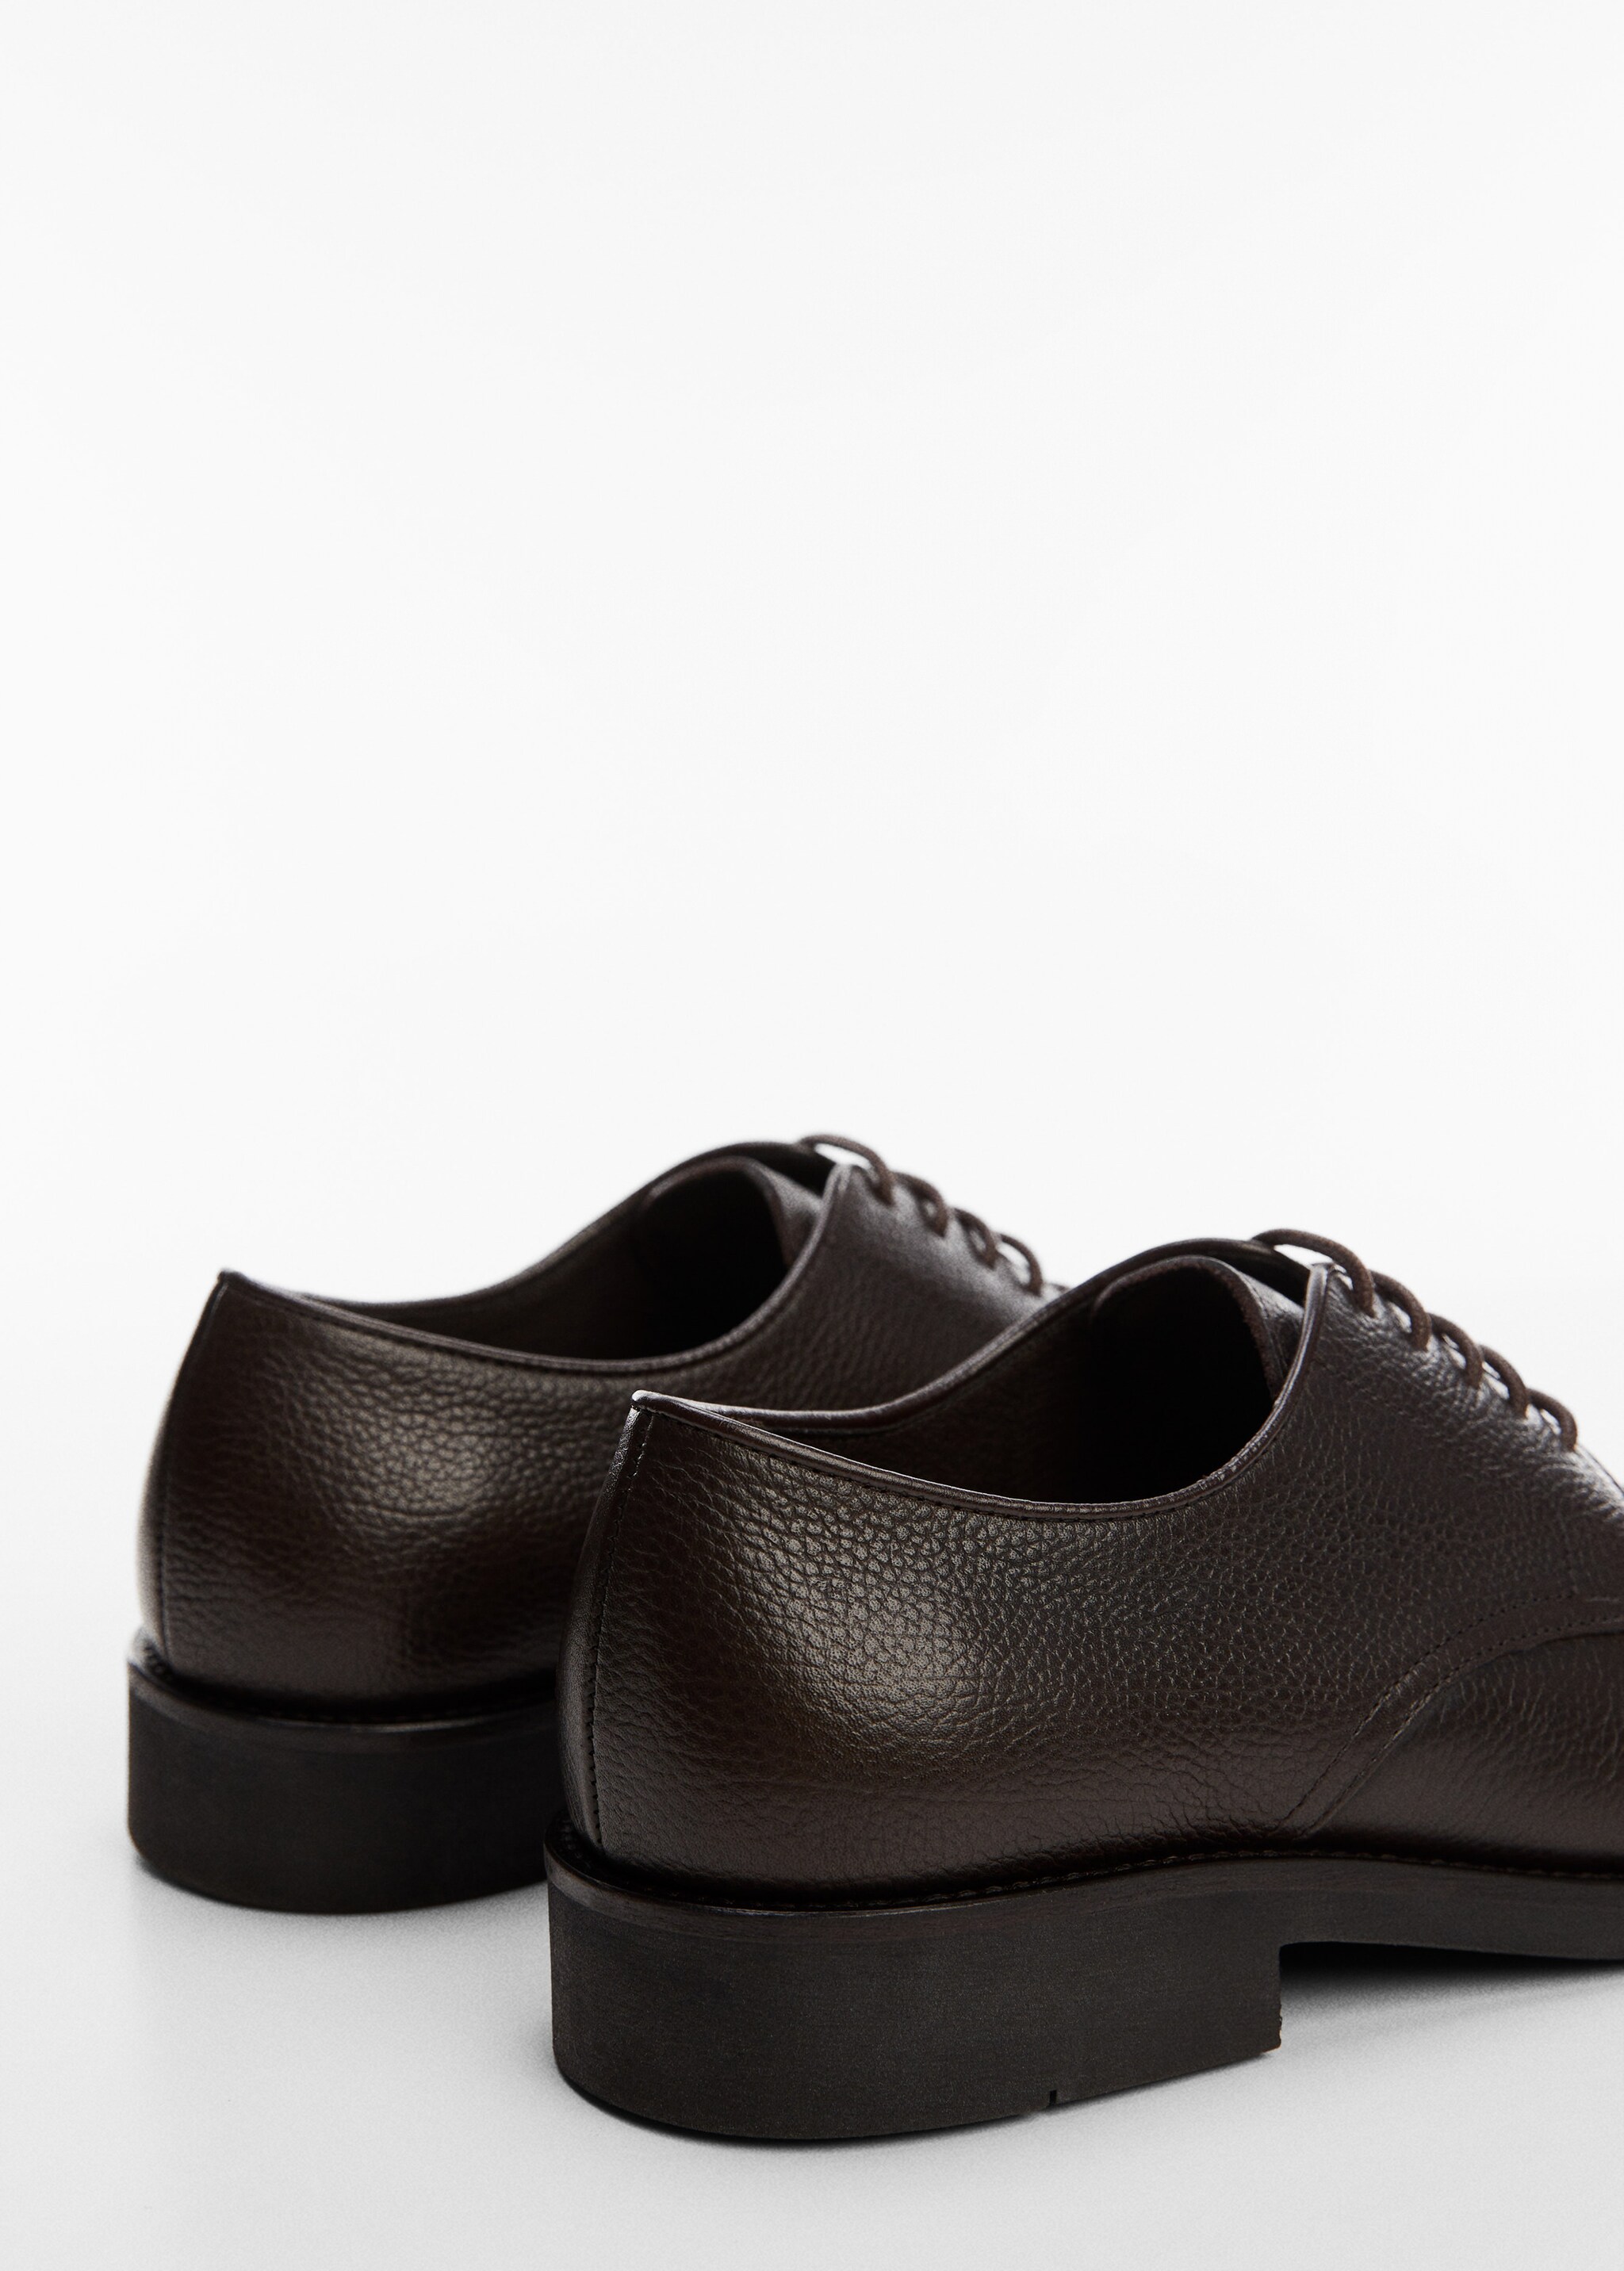 Leather suit shoes - Detaliu al articolului 1